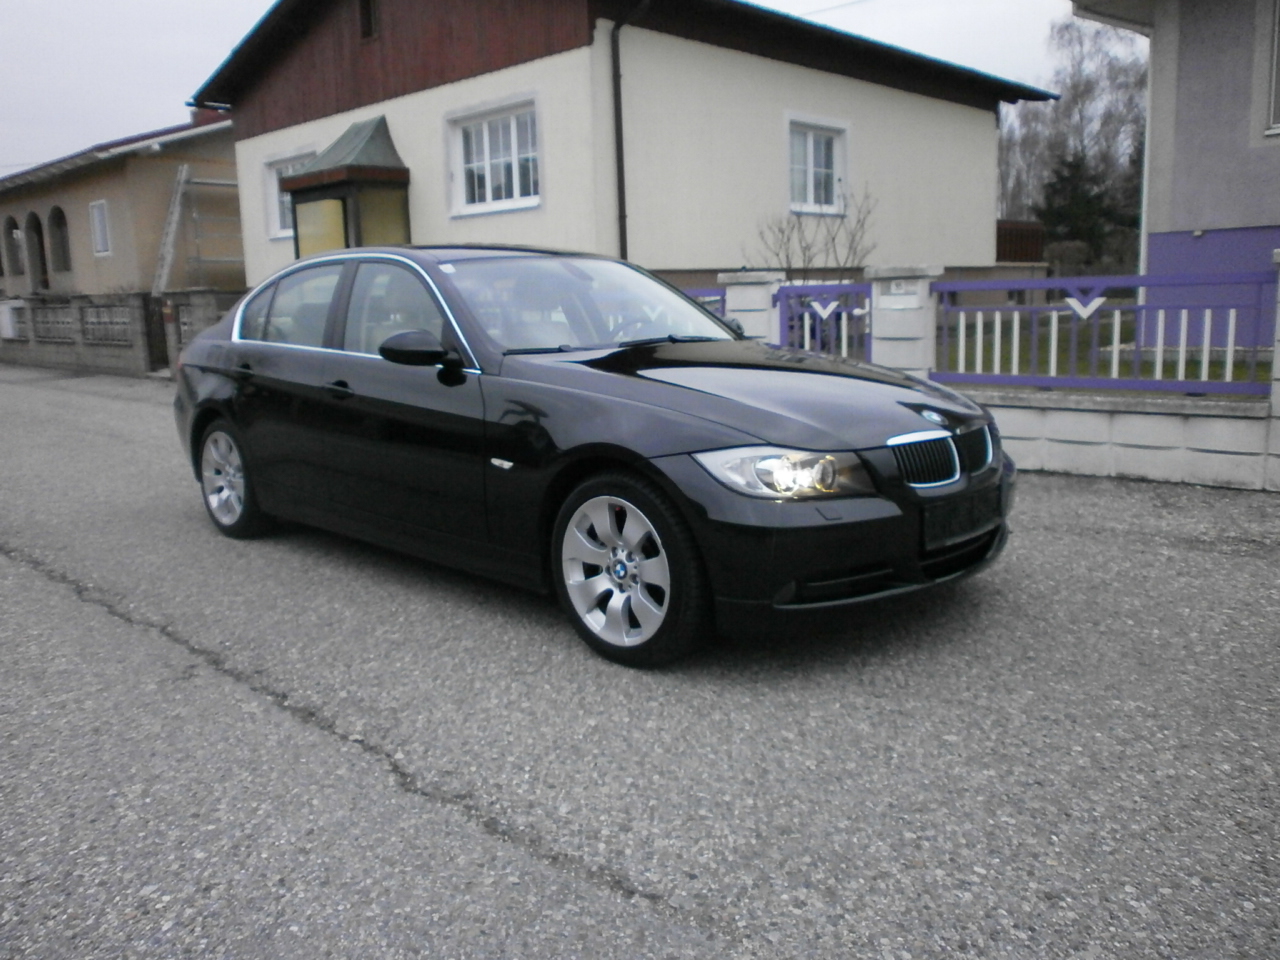 BMW 330xi - € 9000